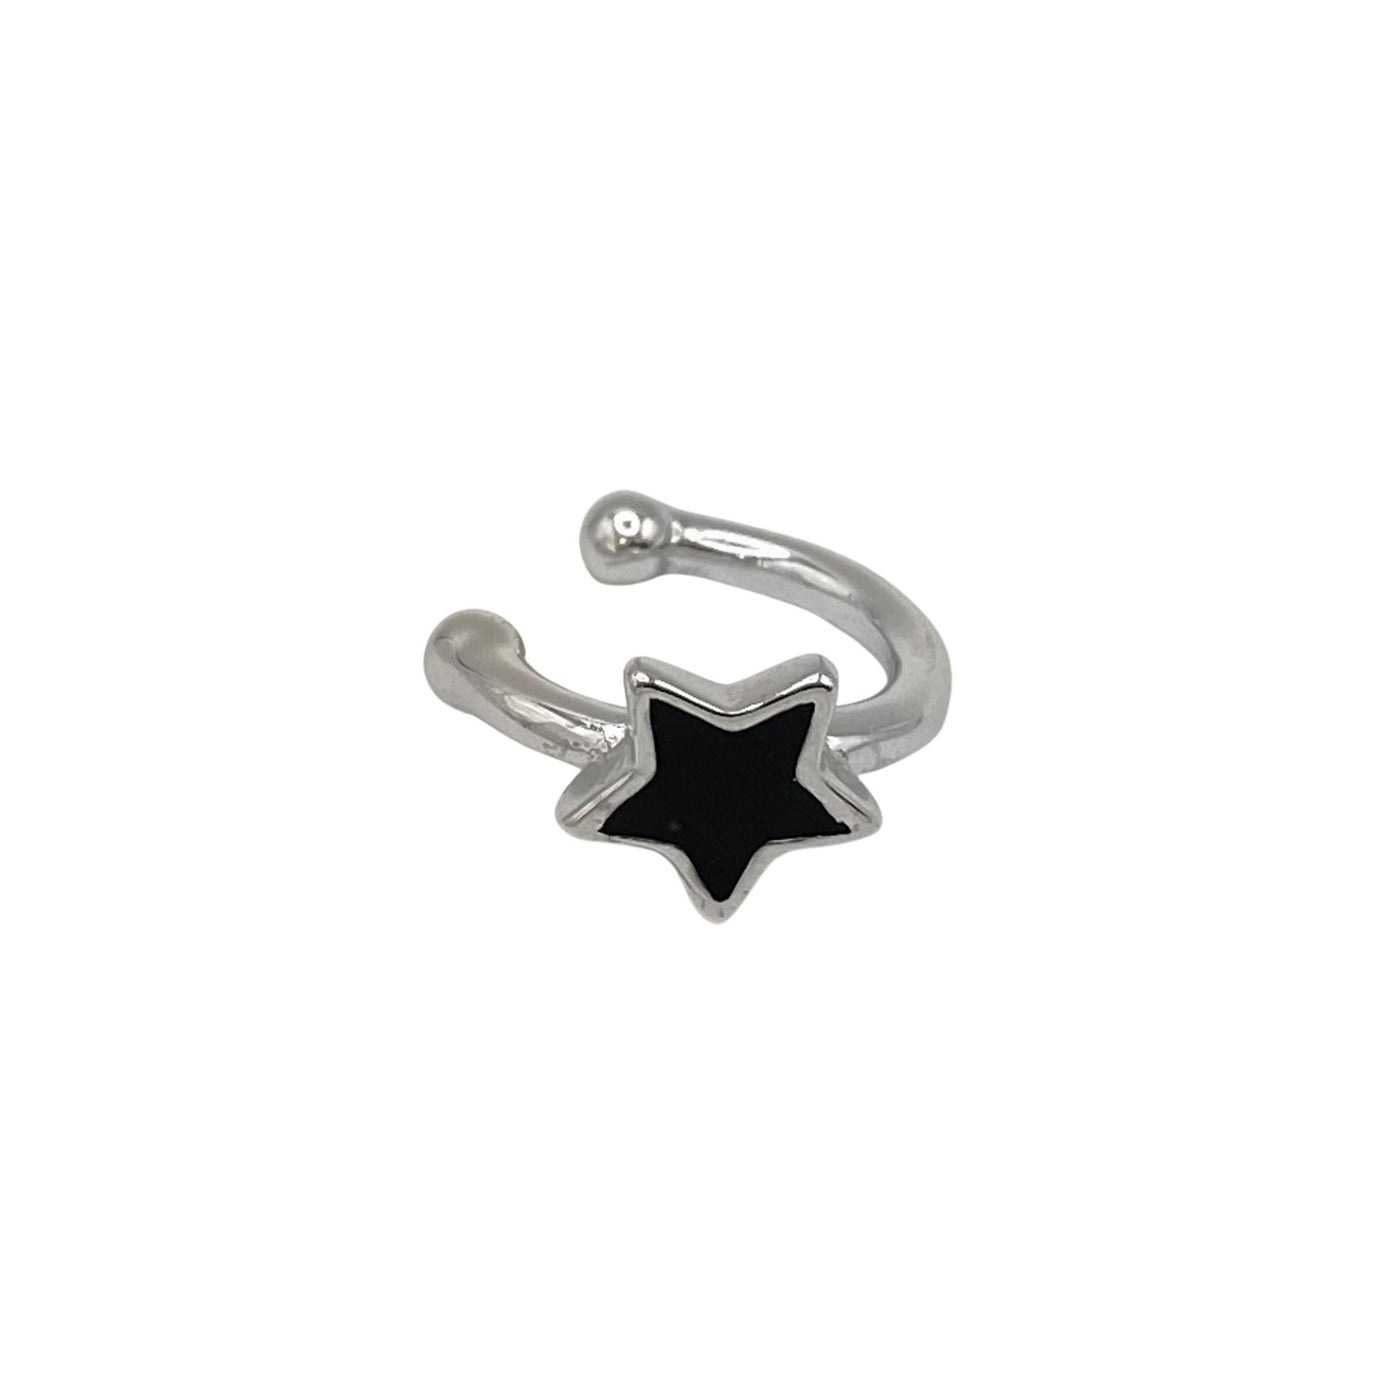 Silver ear cuff with enamel star